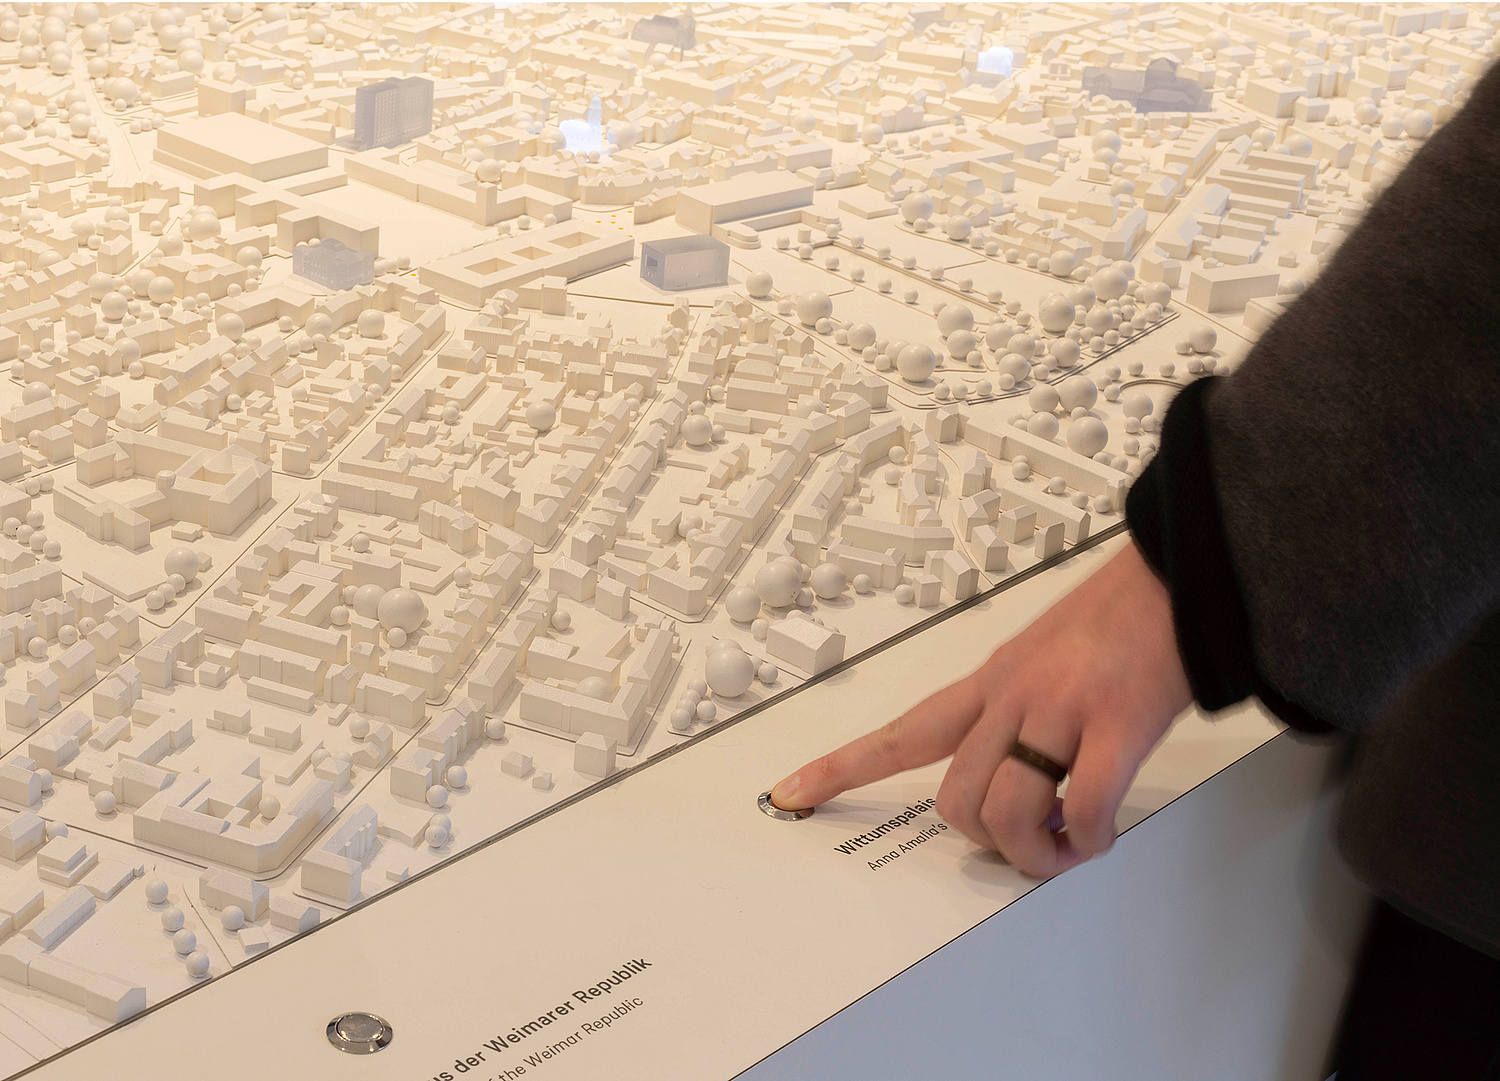 Das Stadtmodell ermöglicht eine spielerische Entdeckungsreise durch Weimar. Von oben wird die einmalige Stadtmorphologie erlebbar gemacht. So finden sich die kleinen und großen Besucher schnell zurecht. (© Papenfuss | Atelier)